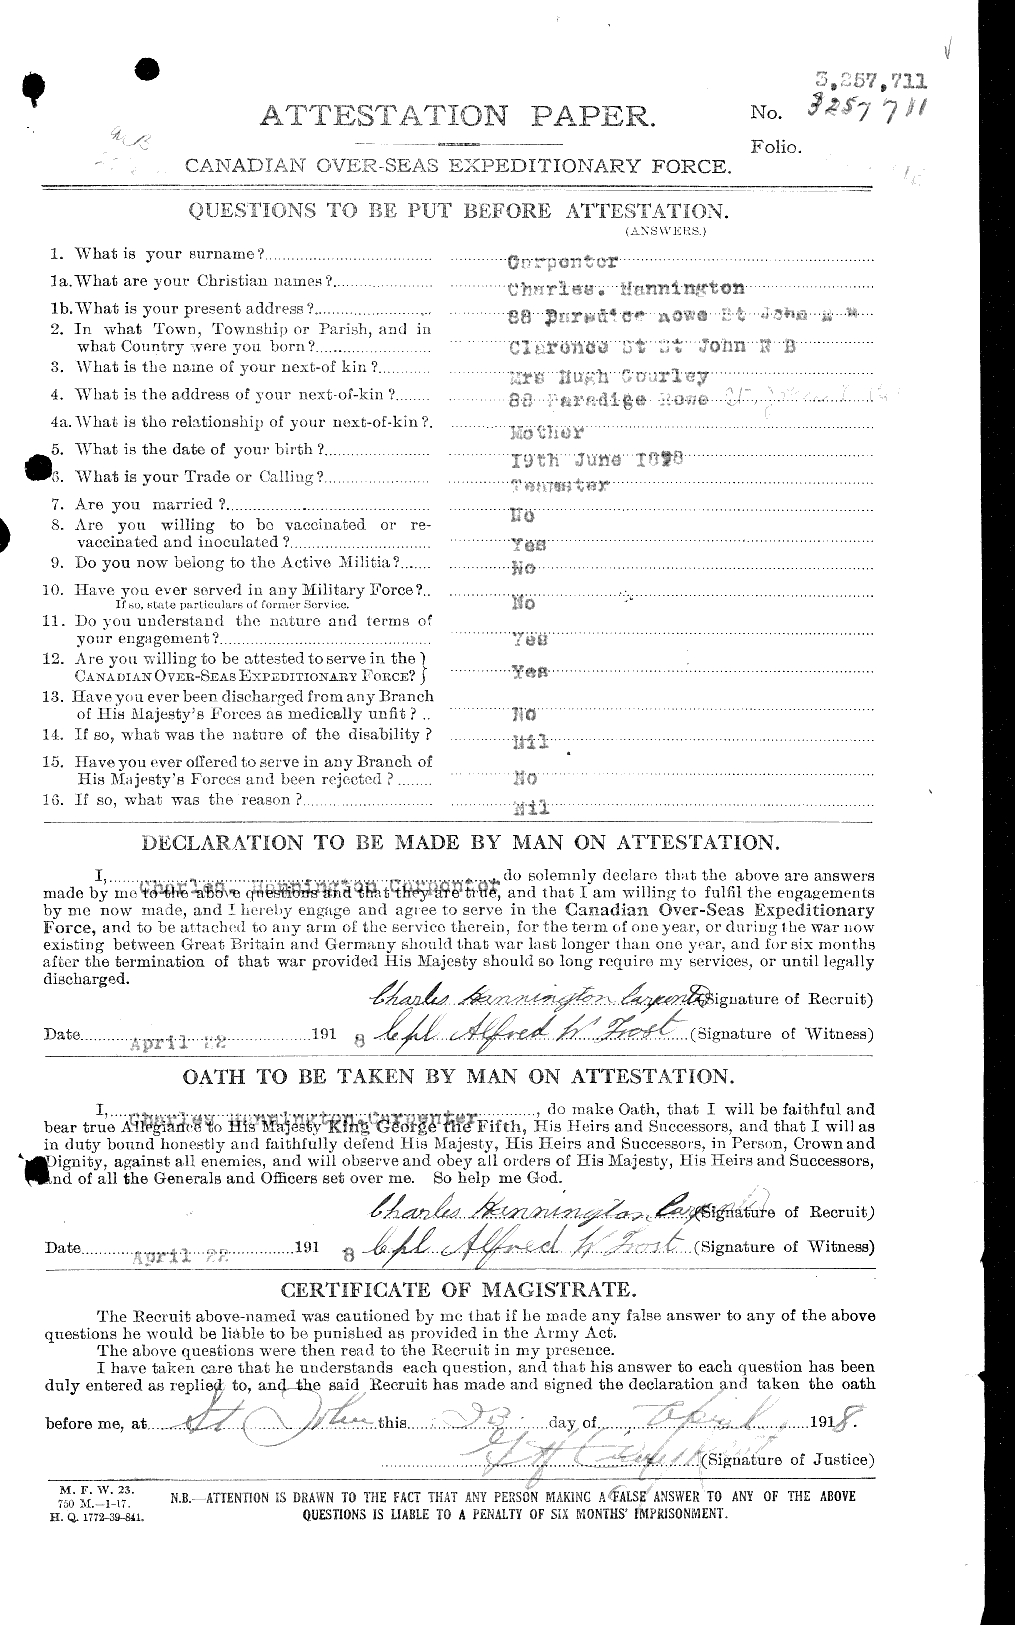 Dossiers du Personnel de la Première Guerre mondiale - CEC 010131a